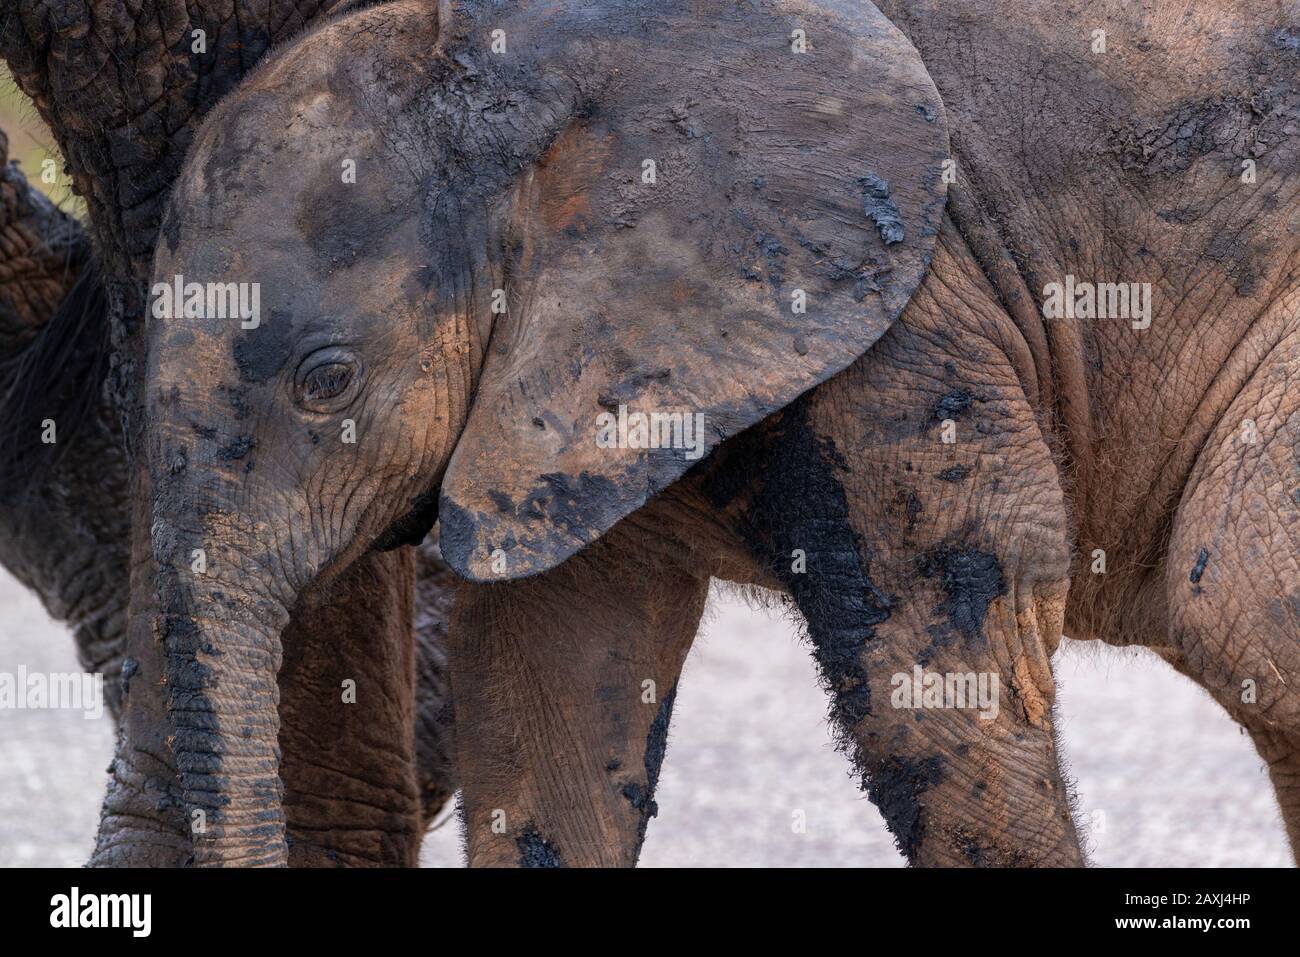 Veau d'éléphant, après avoir été dans un trou d'eau boueux, s'abritant sous sa mère dans le parc national Addo Elephant, le Cap oriental, Afrique du Sud Banque D'Images